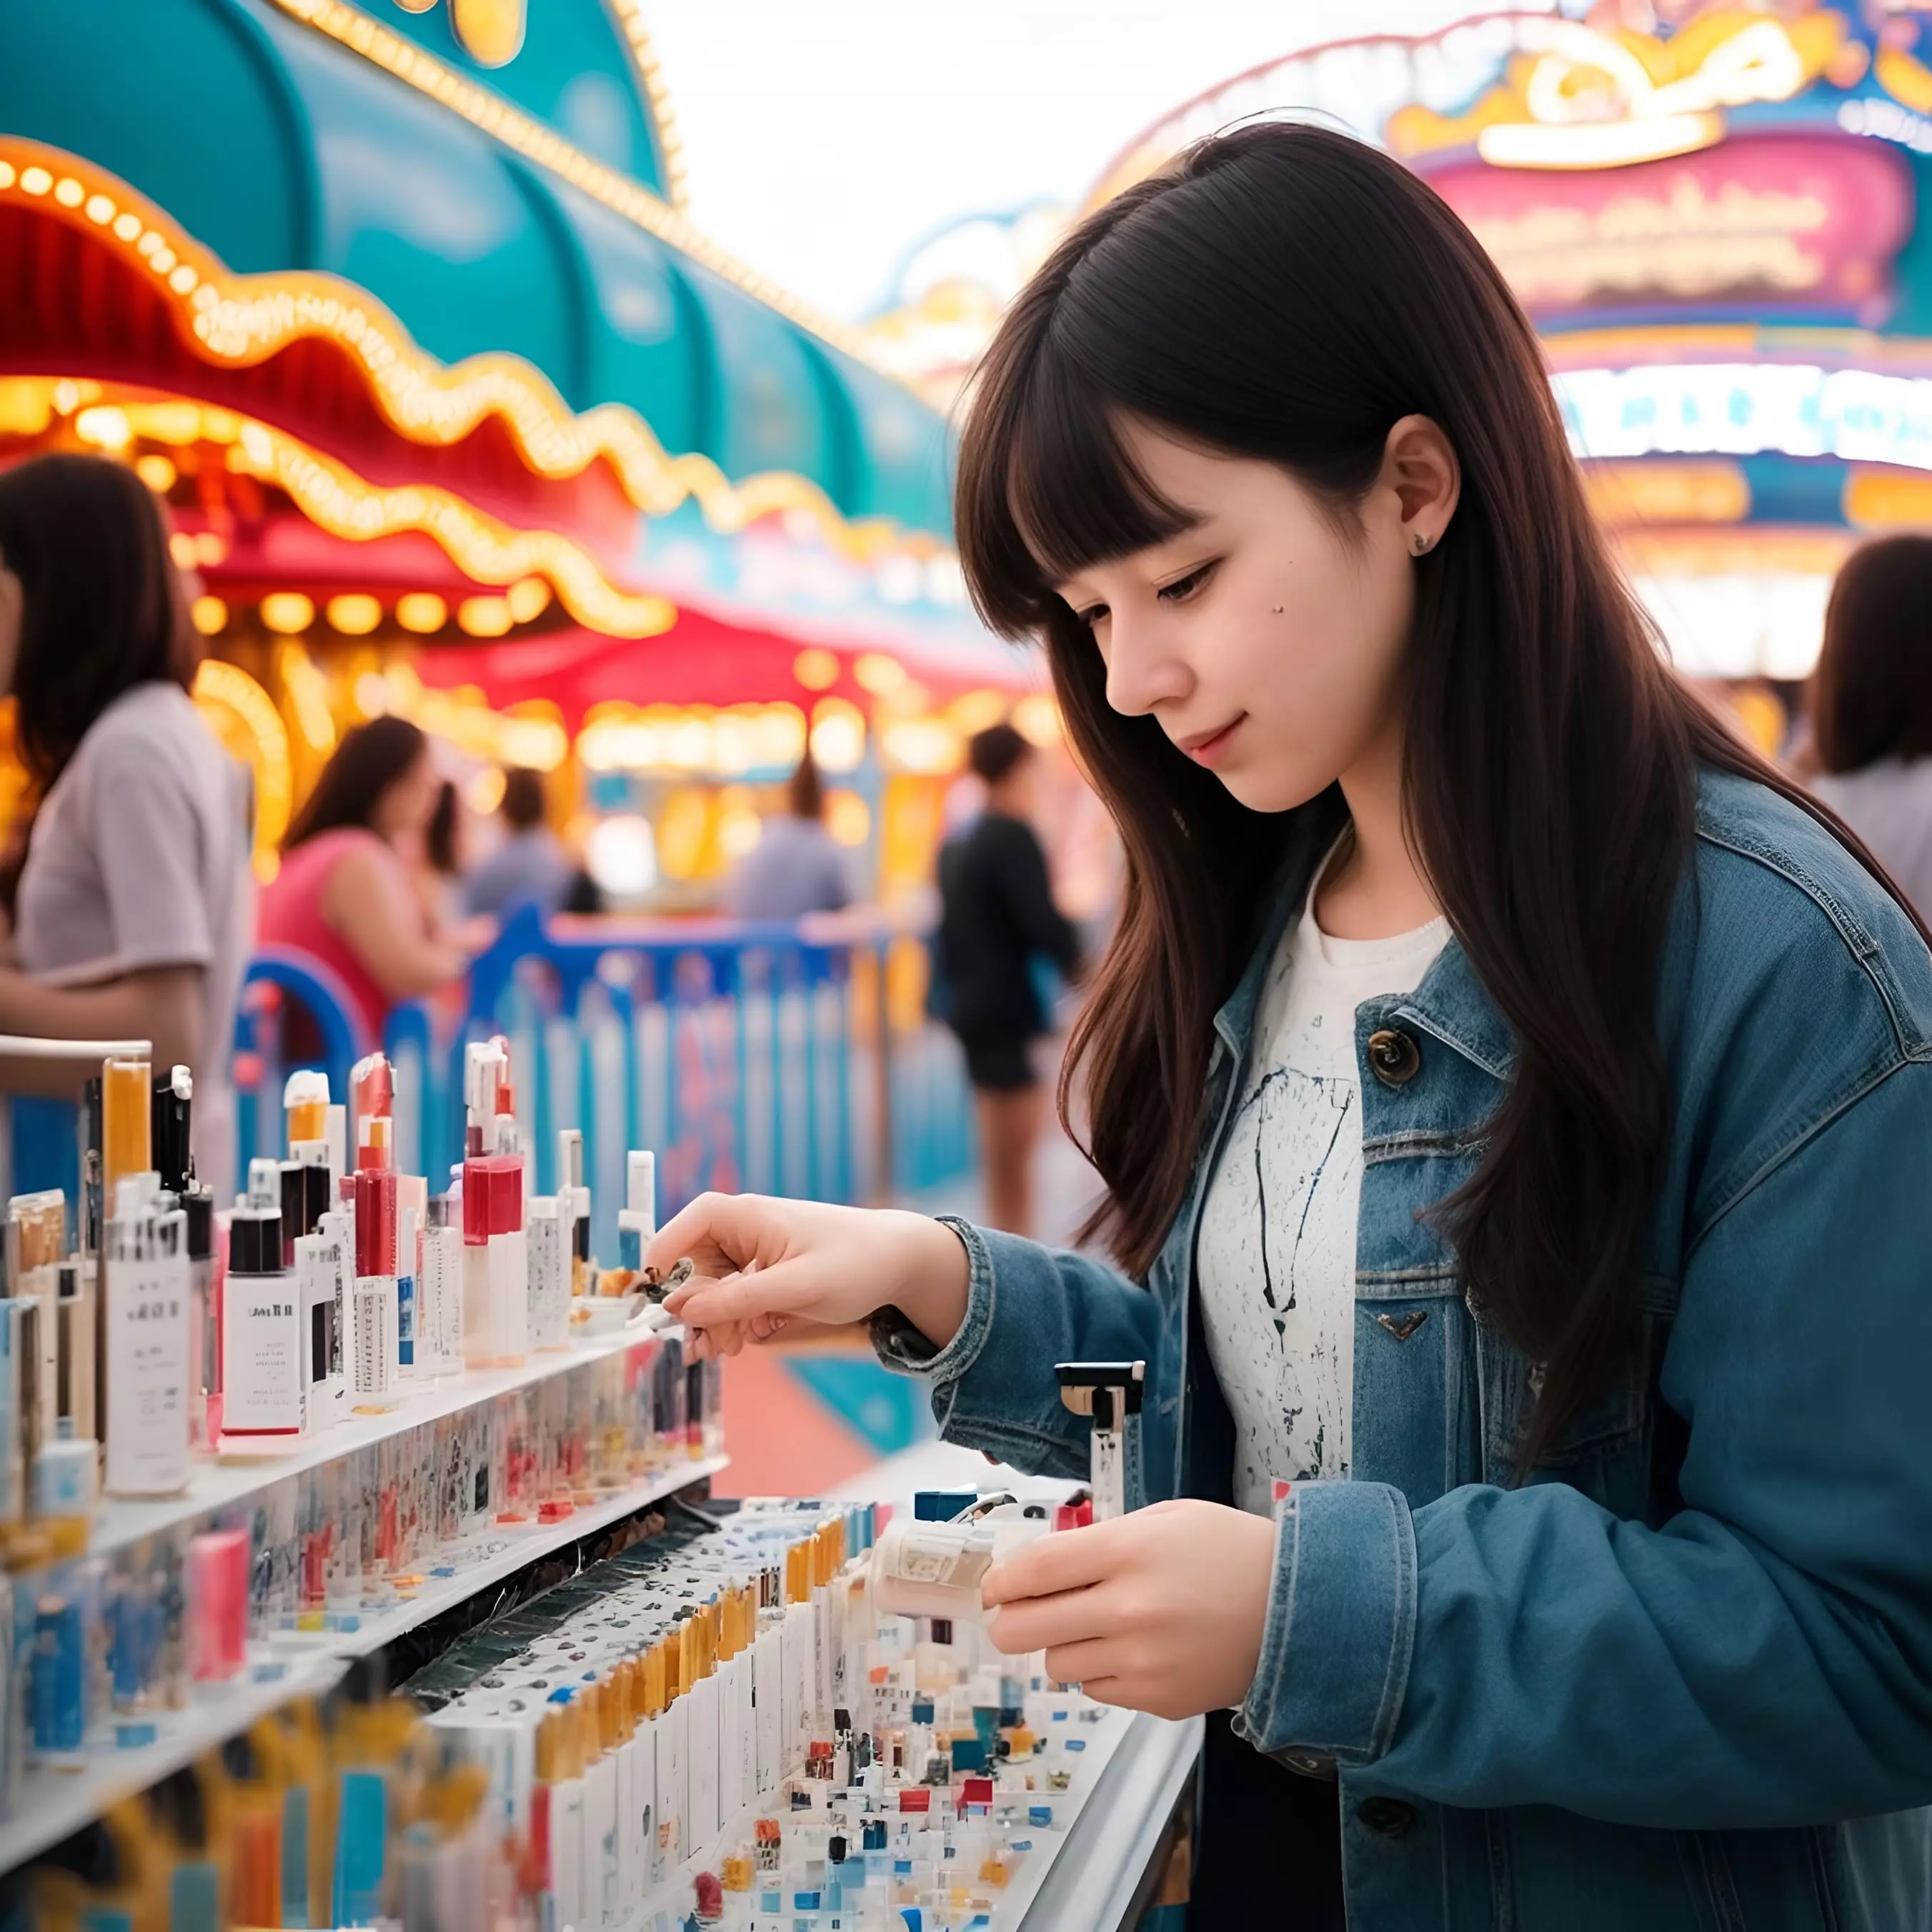 Mujer joven observando productos